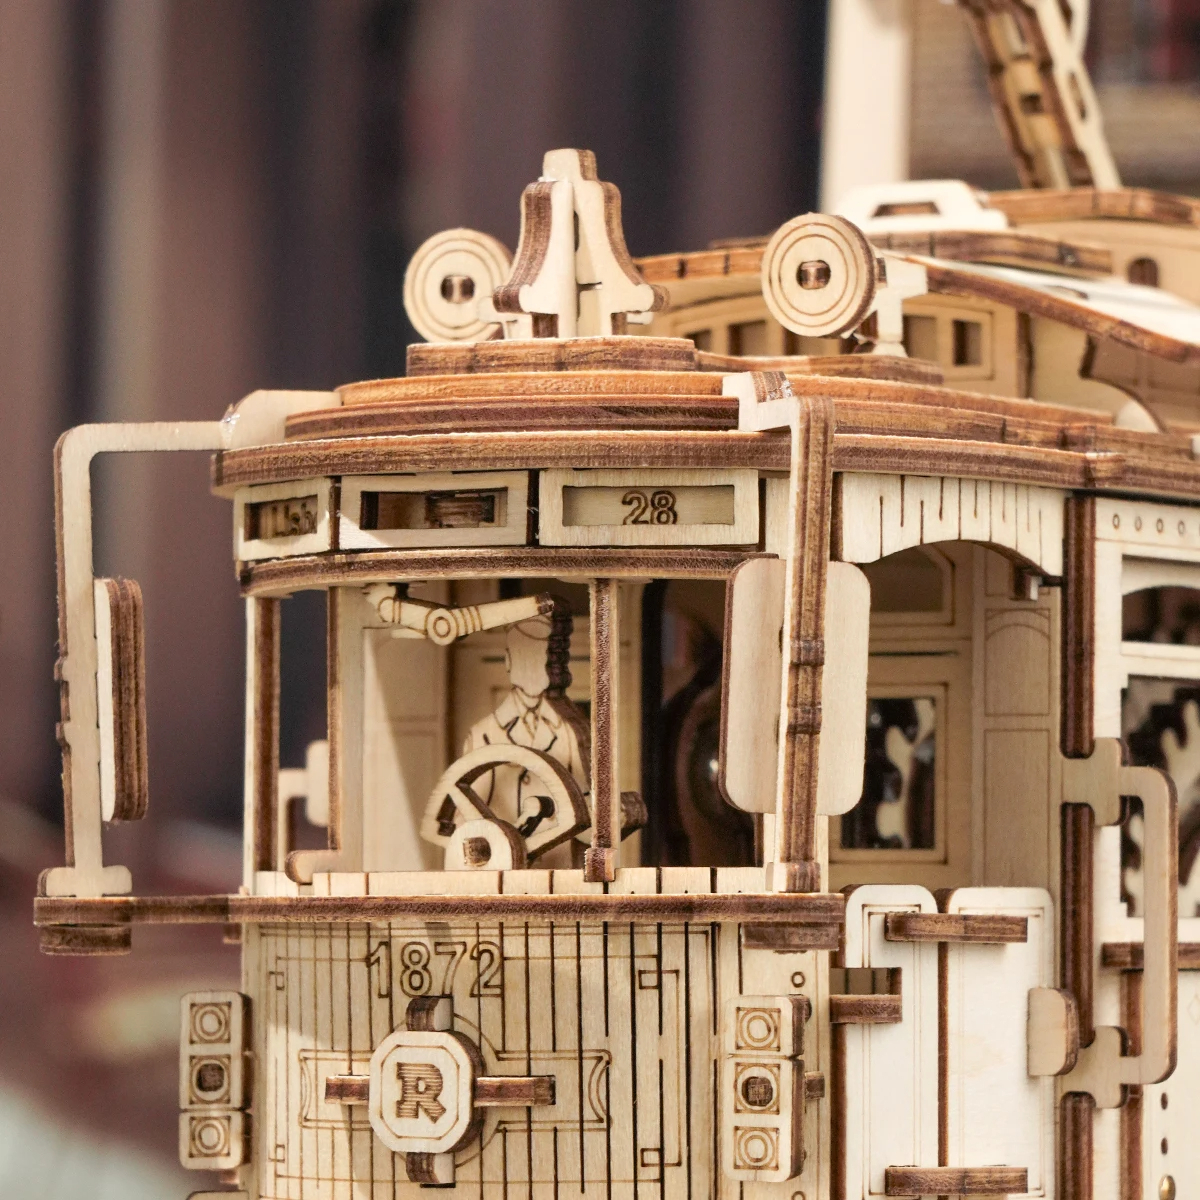  из дерева 3D сборная головоломка модель комплект classic City to дождь мозаика электропоезд хобби взрослый развивающая игрушка интерьер оборудование орнамент 